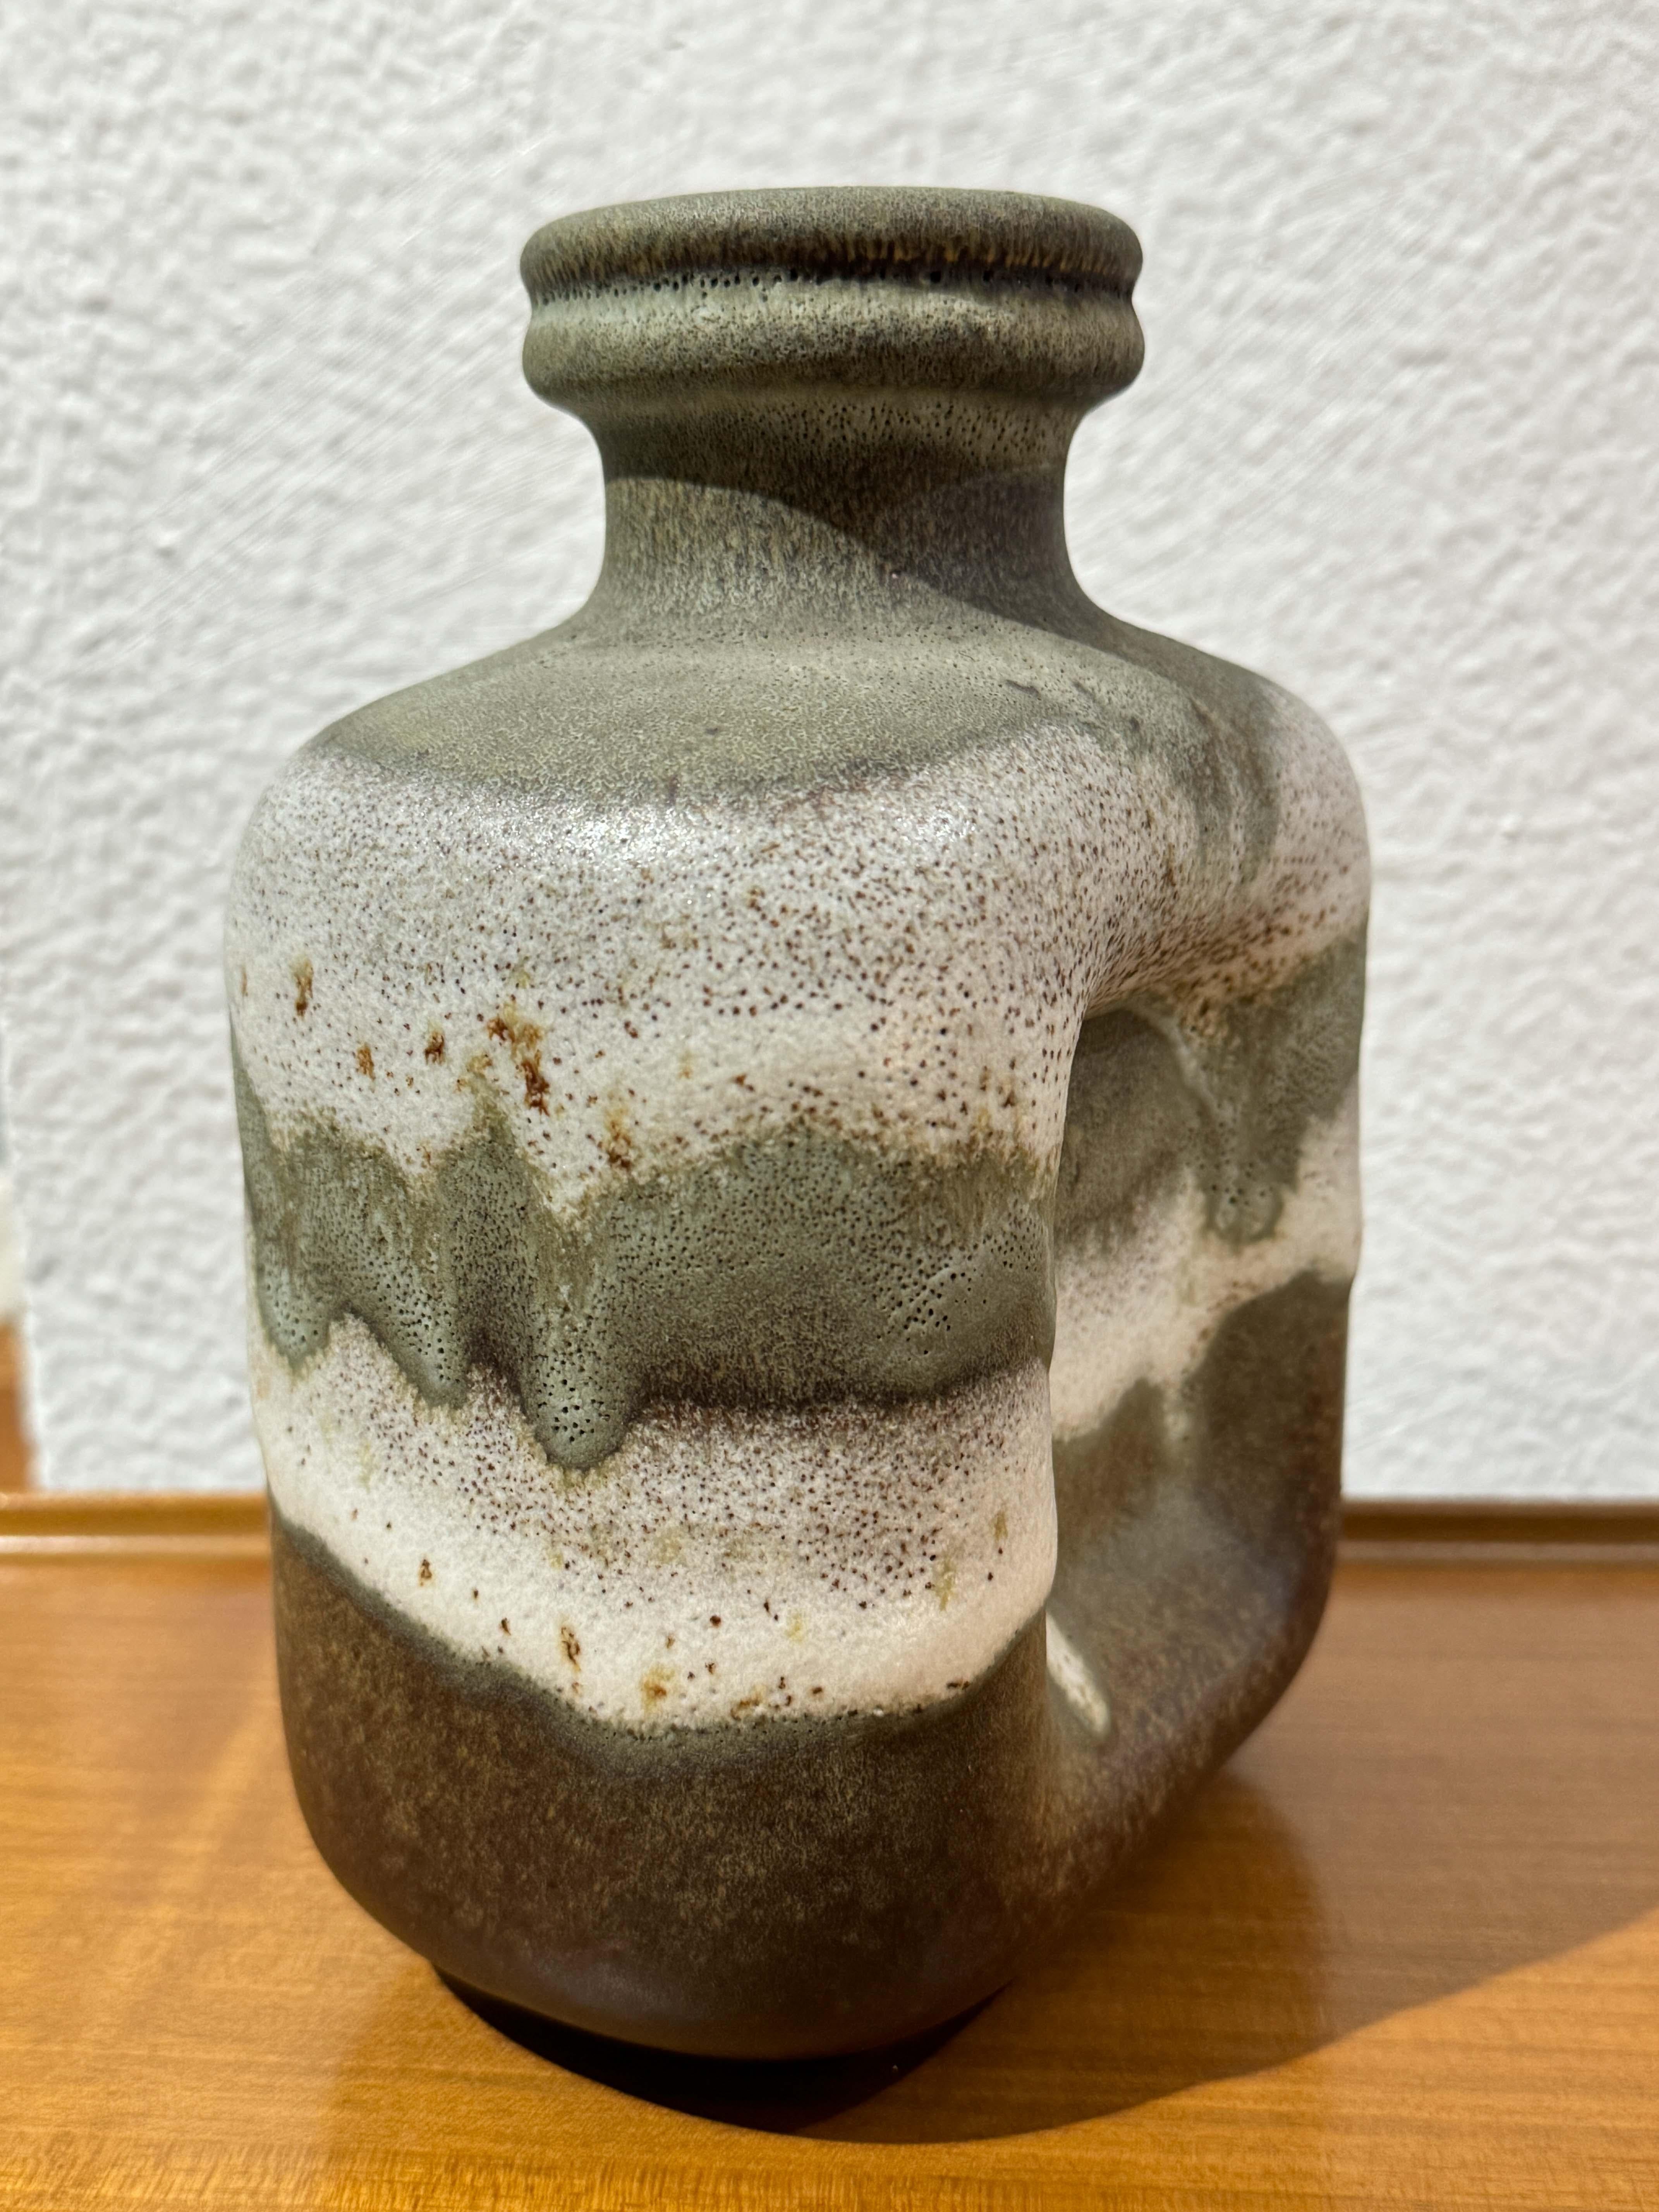 Mit dieser Keramikvase von Steuler Keramik aus der Jahrhundertmitte erwerben Sie ein Stück Designgeschichte, in dem Form und Funktion nahtlos ineinander übergehen. Steuler Keramik, bekannt für seine innovative Herangehensweise an die Keramik der